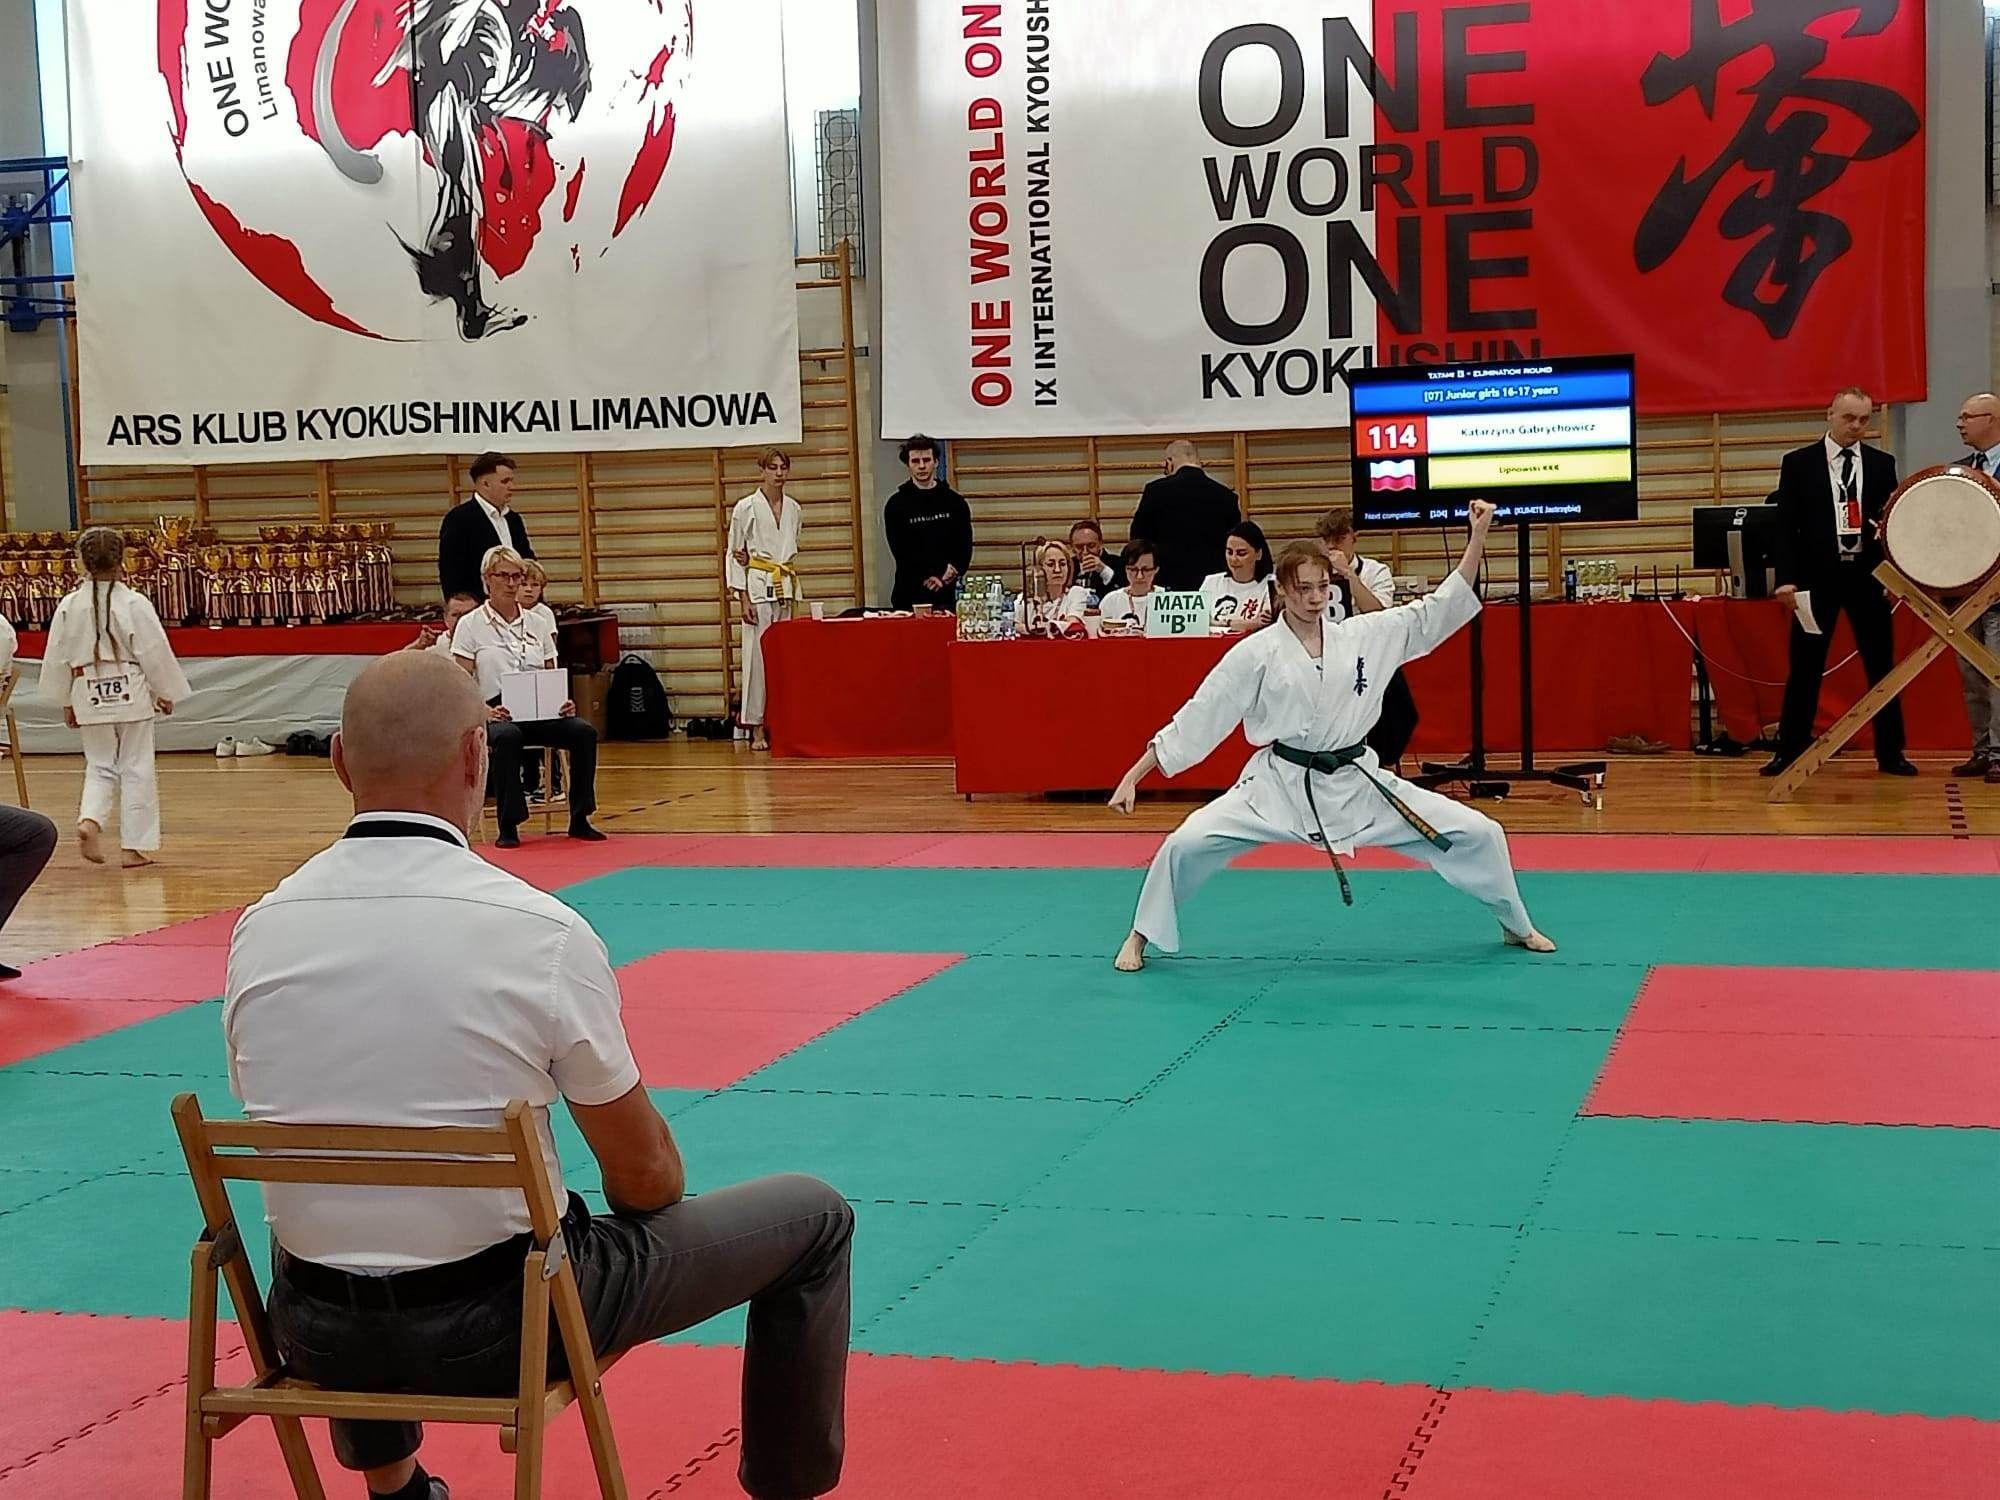 IX Międzynarodowy Turniej One World One Kyokushin - 17 czerwca 2023 r., Limanowa